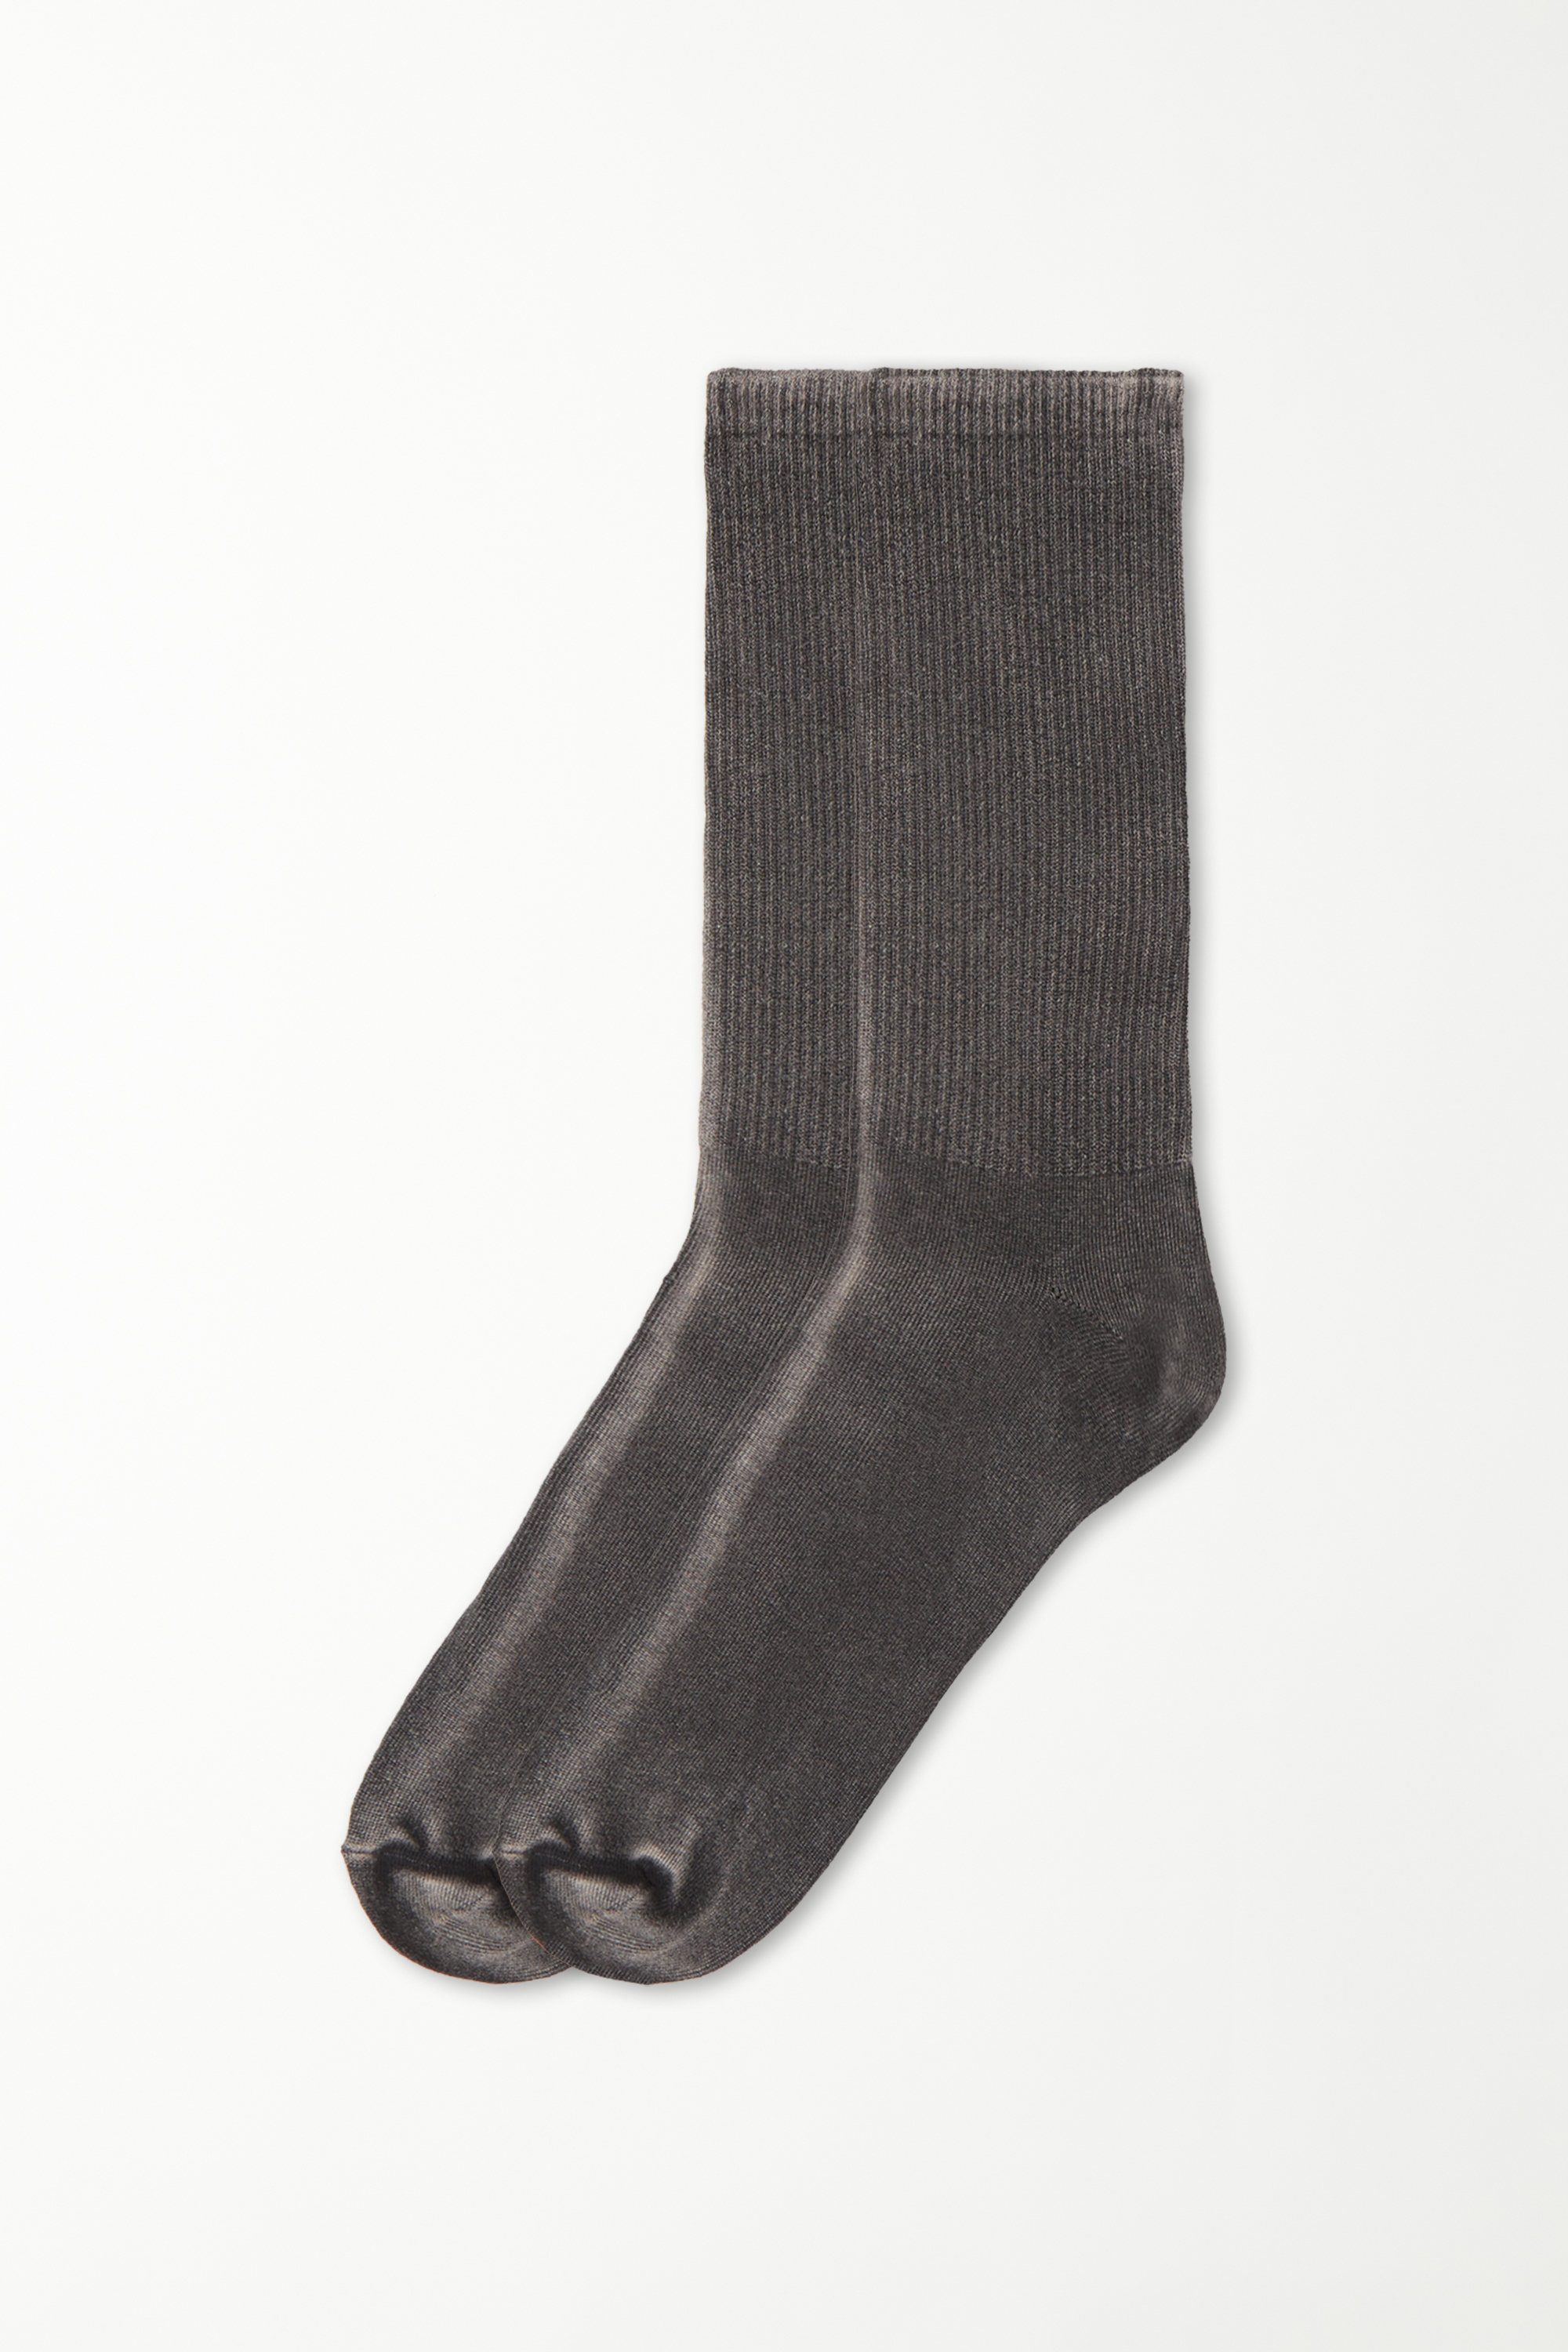 Halbkurze Herren-Socken aus gemusterter Baumwolle